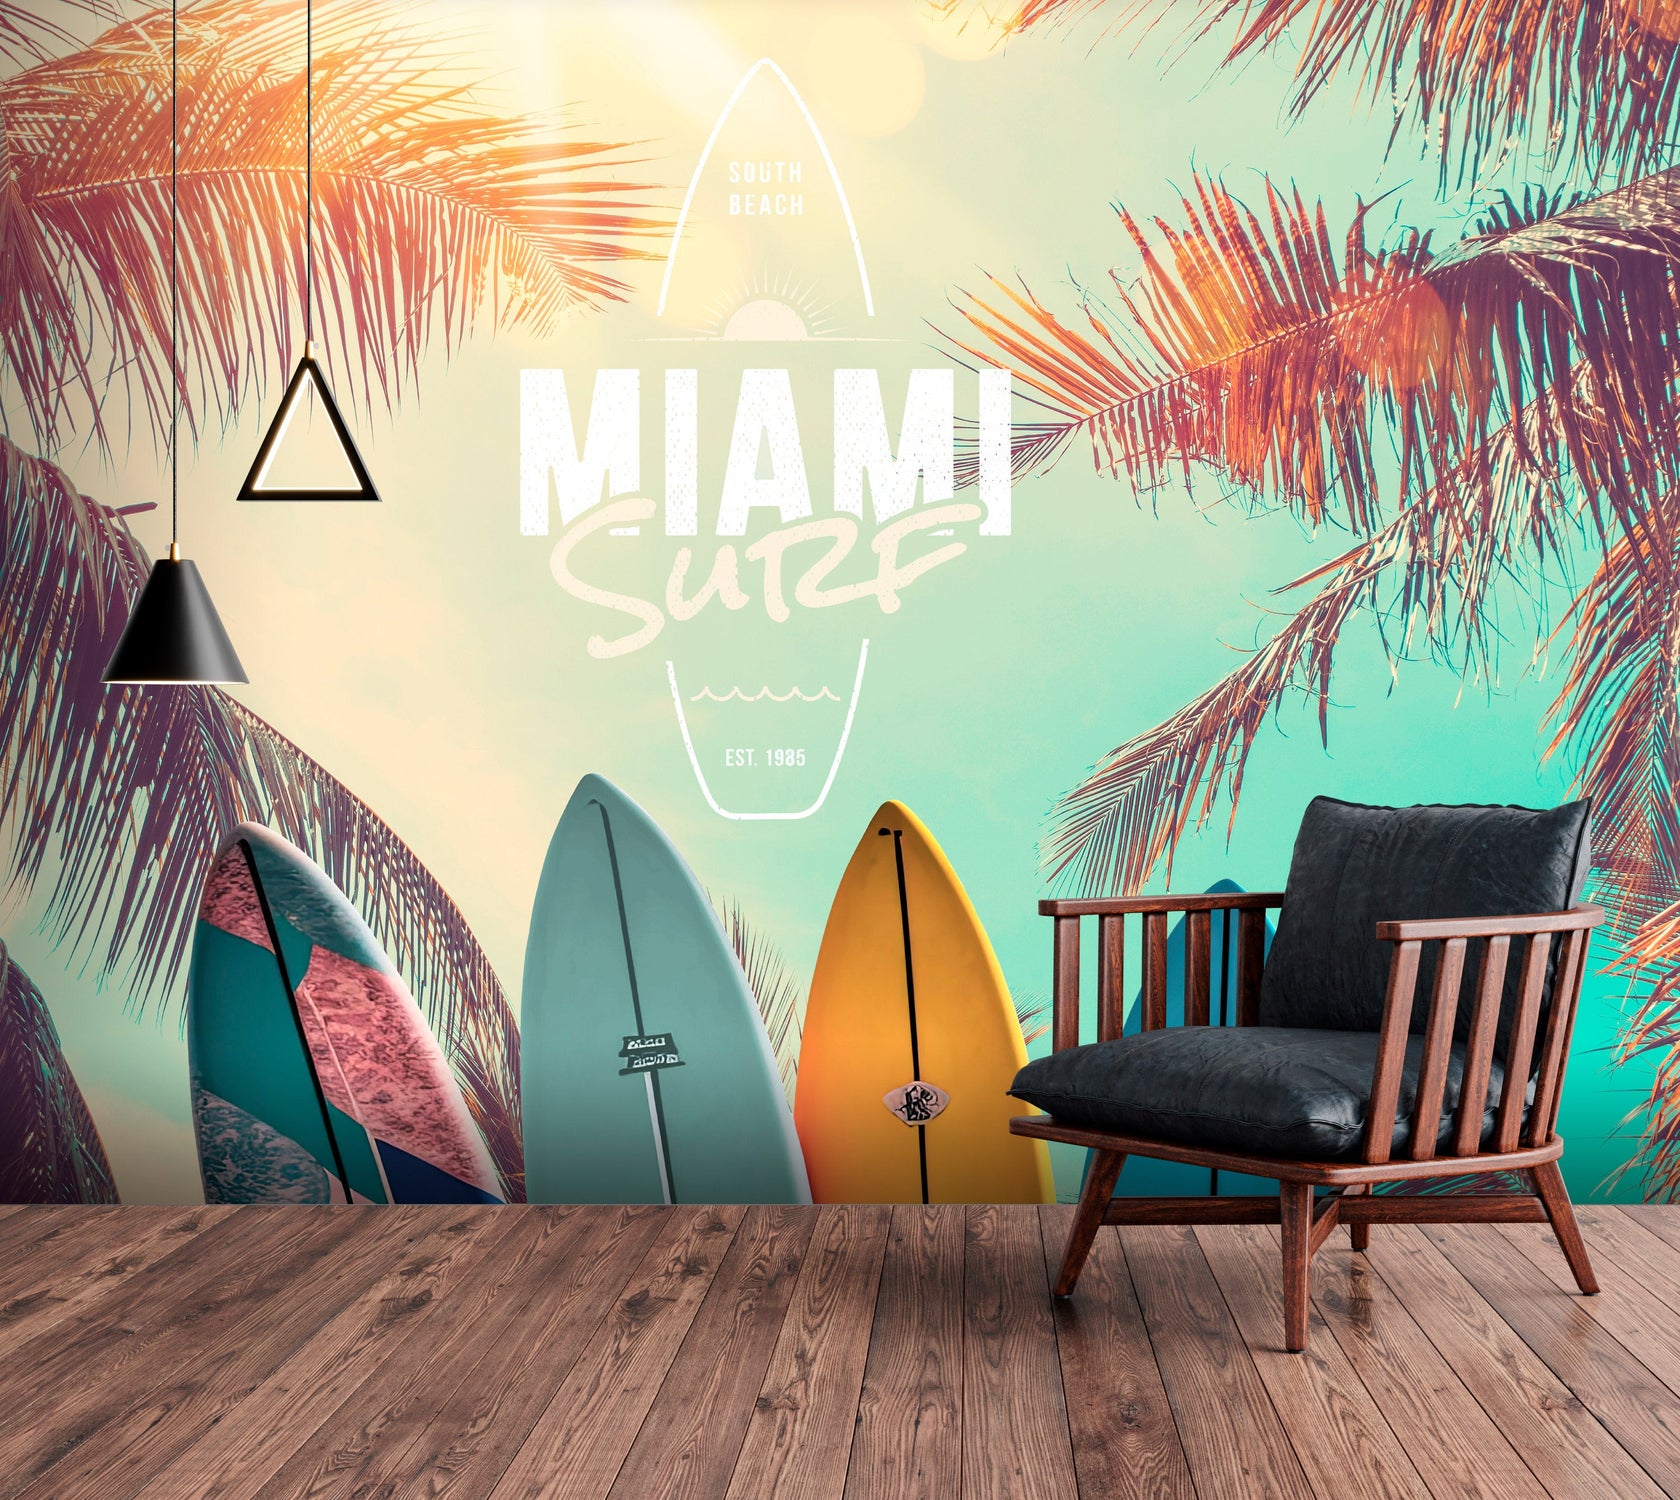 Tropical Wallpaper Wall Mural - South Beach Miami Surf-Tiptophomedecor